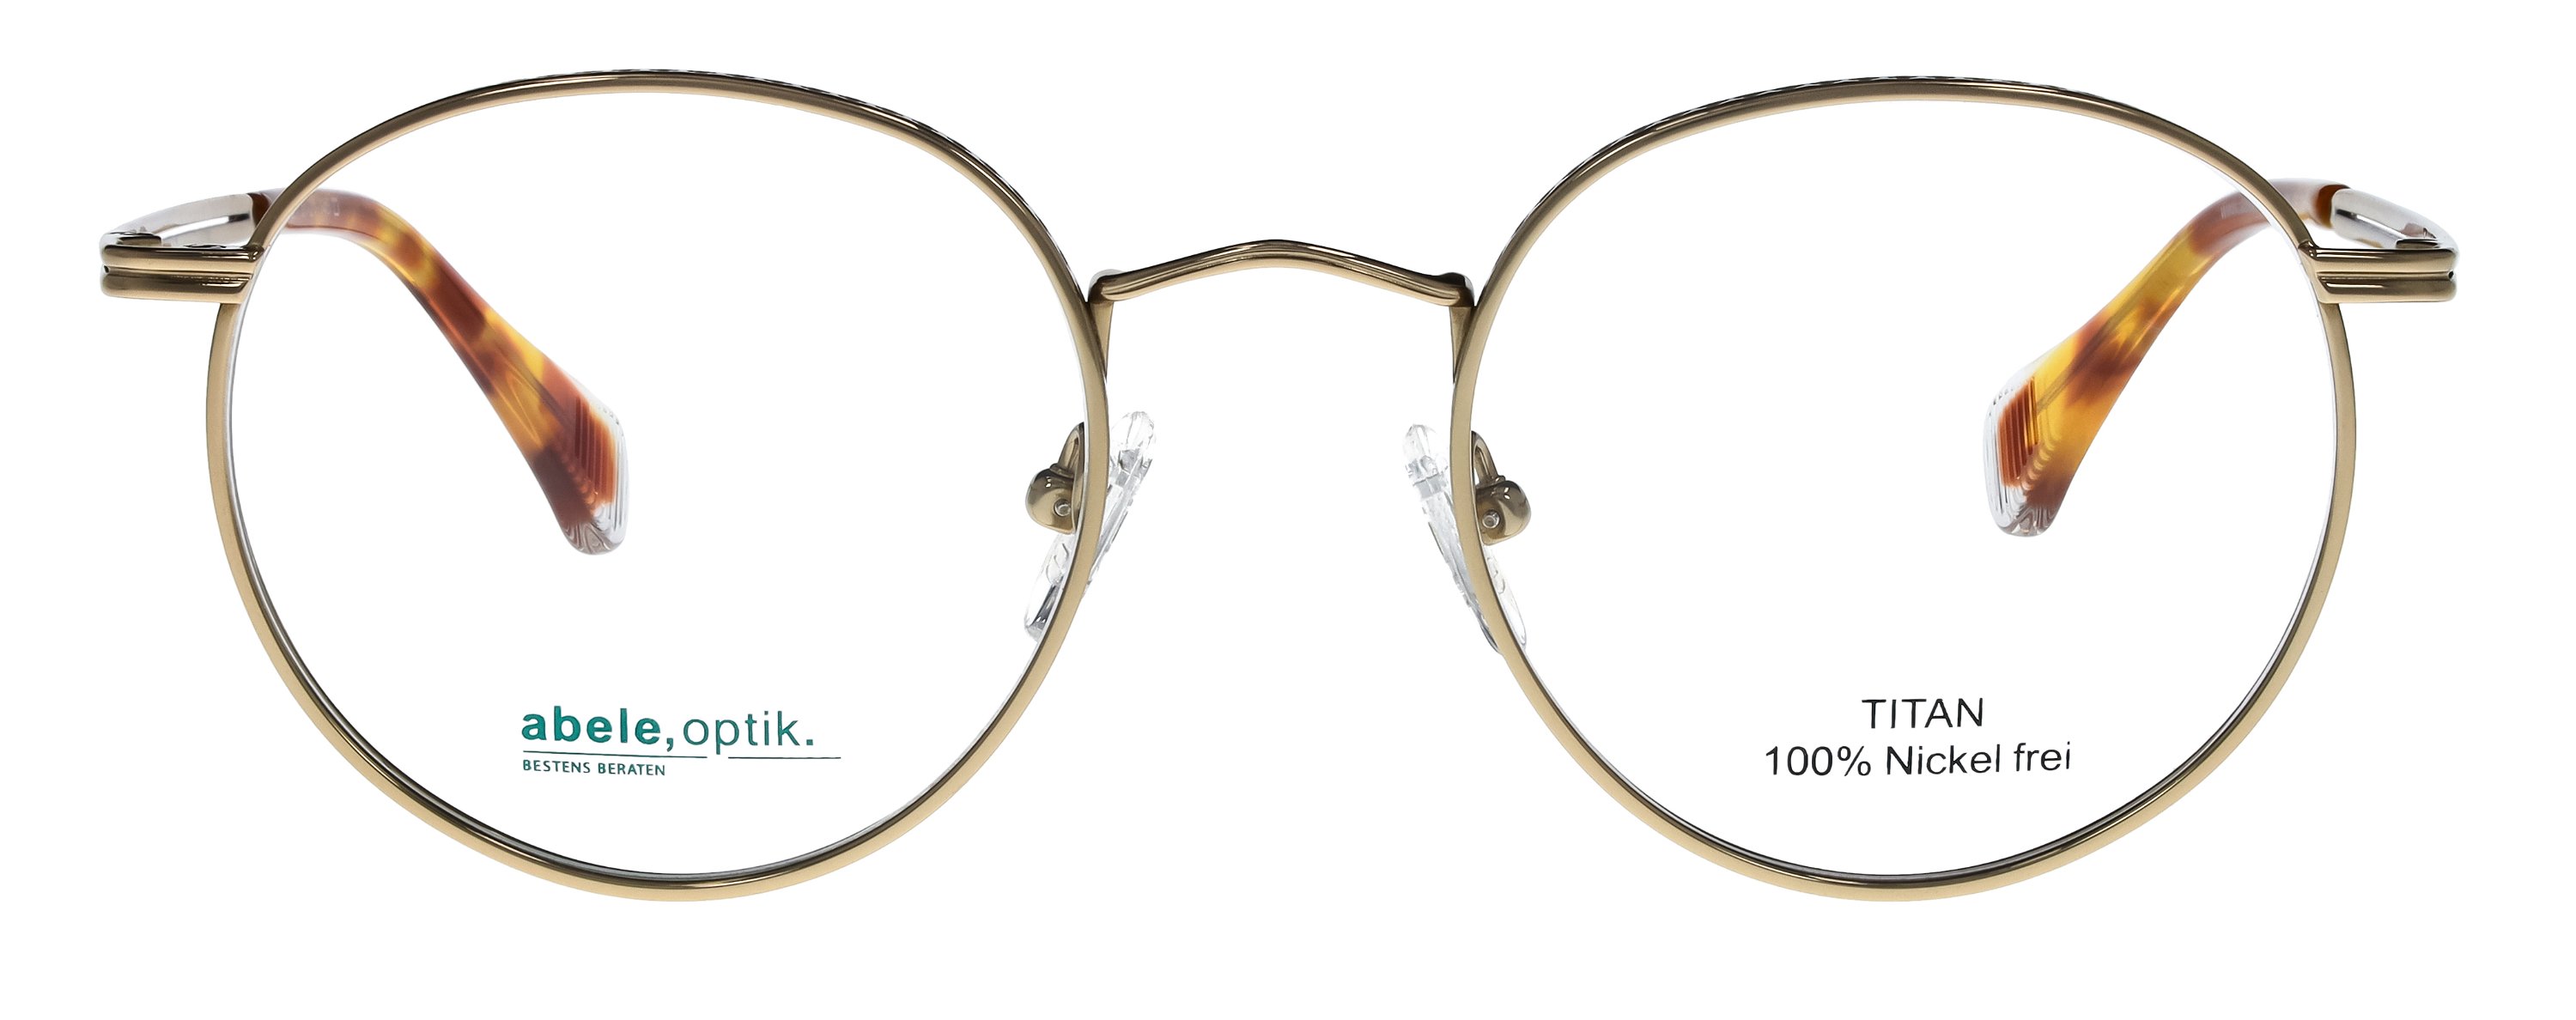 Das Bild zeigt die Korrektionsbrille 148121 von der Marke Abele Optik in gold.